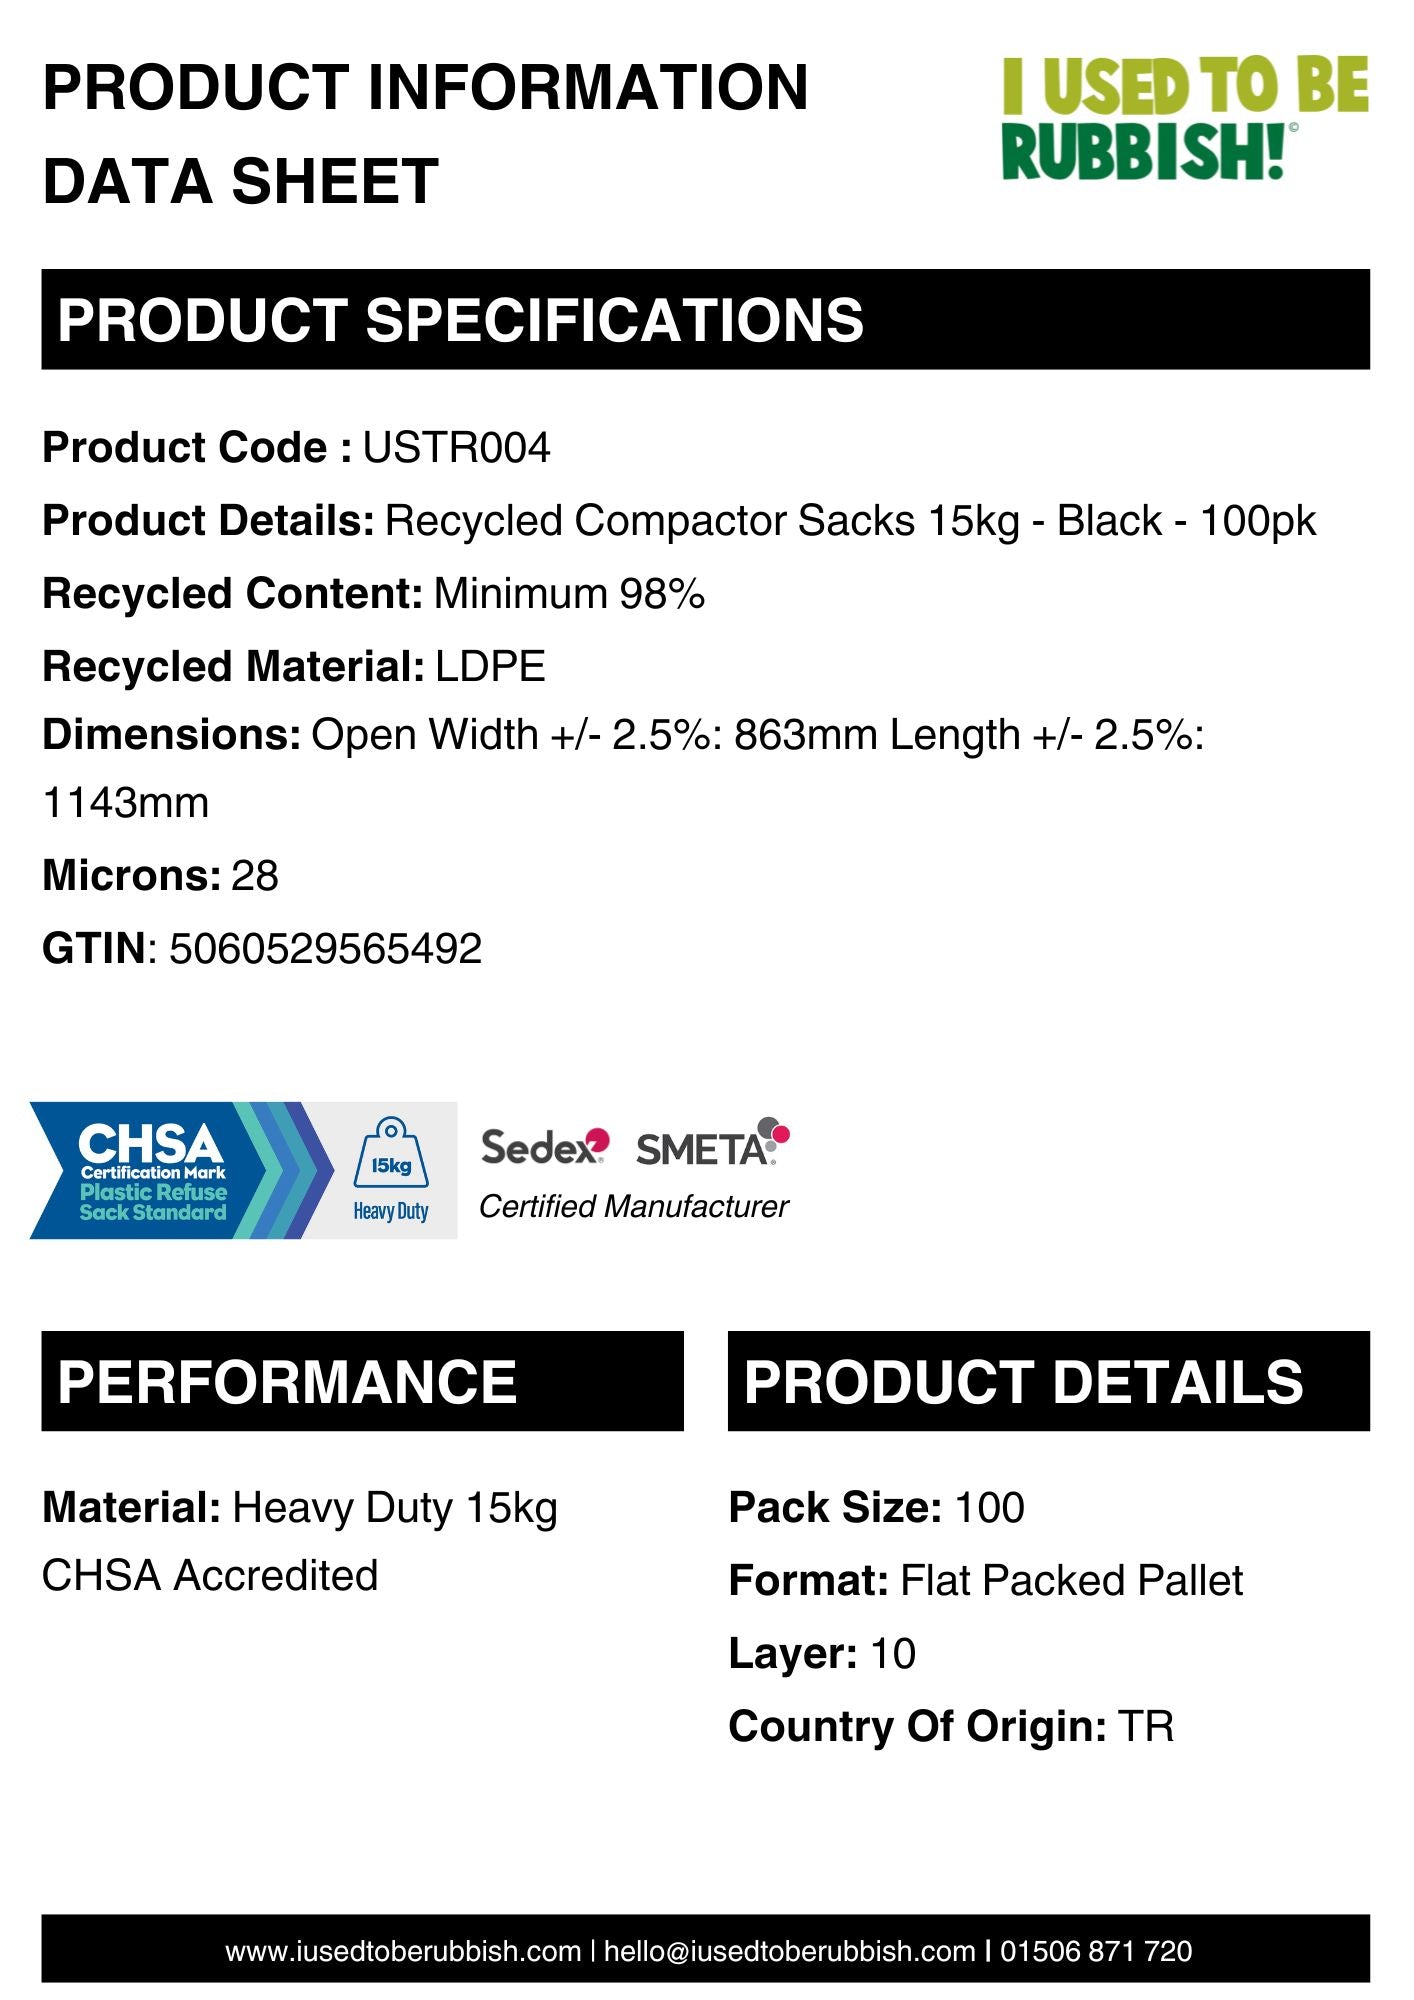 PALLET - Recycled Compactor Sacks 15kg - Black - 77 x 100pk (USTR004)